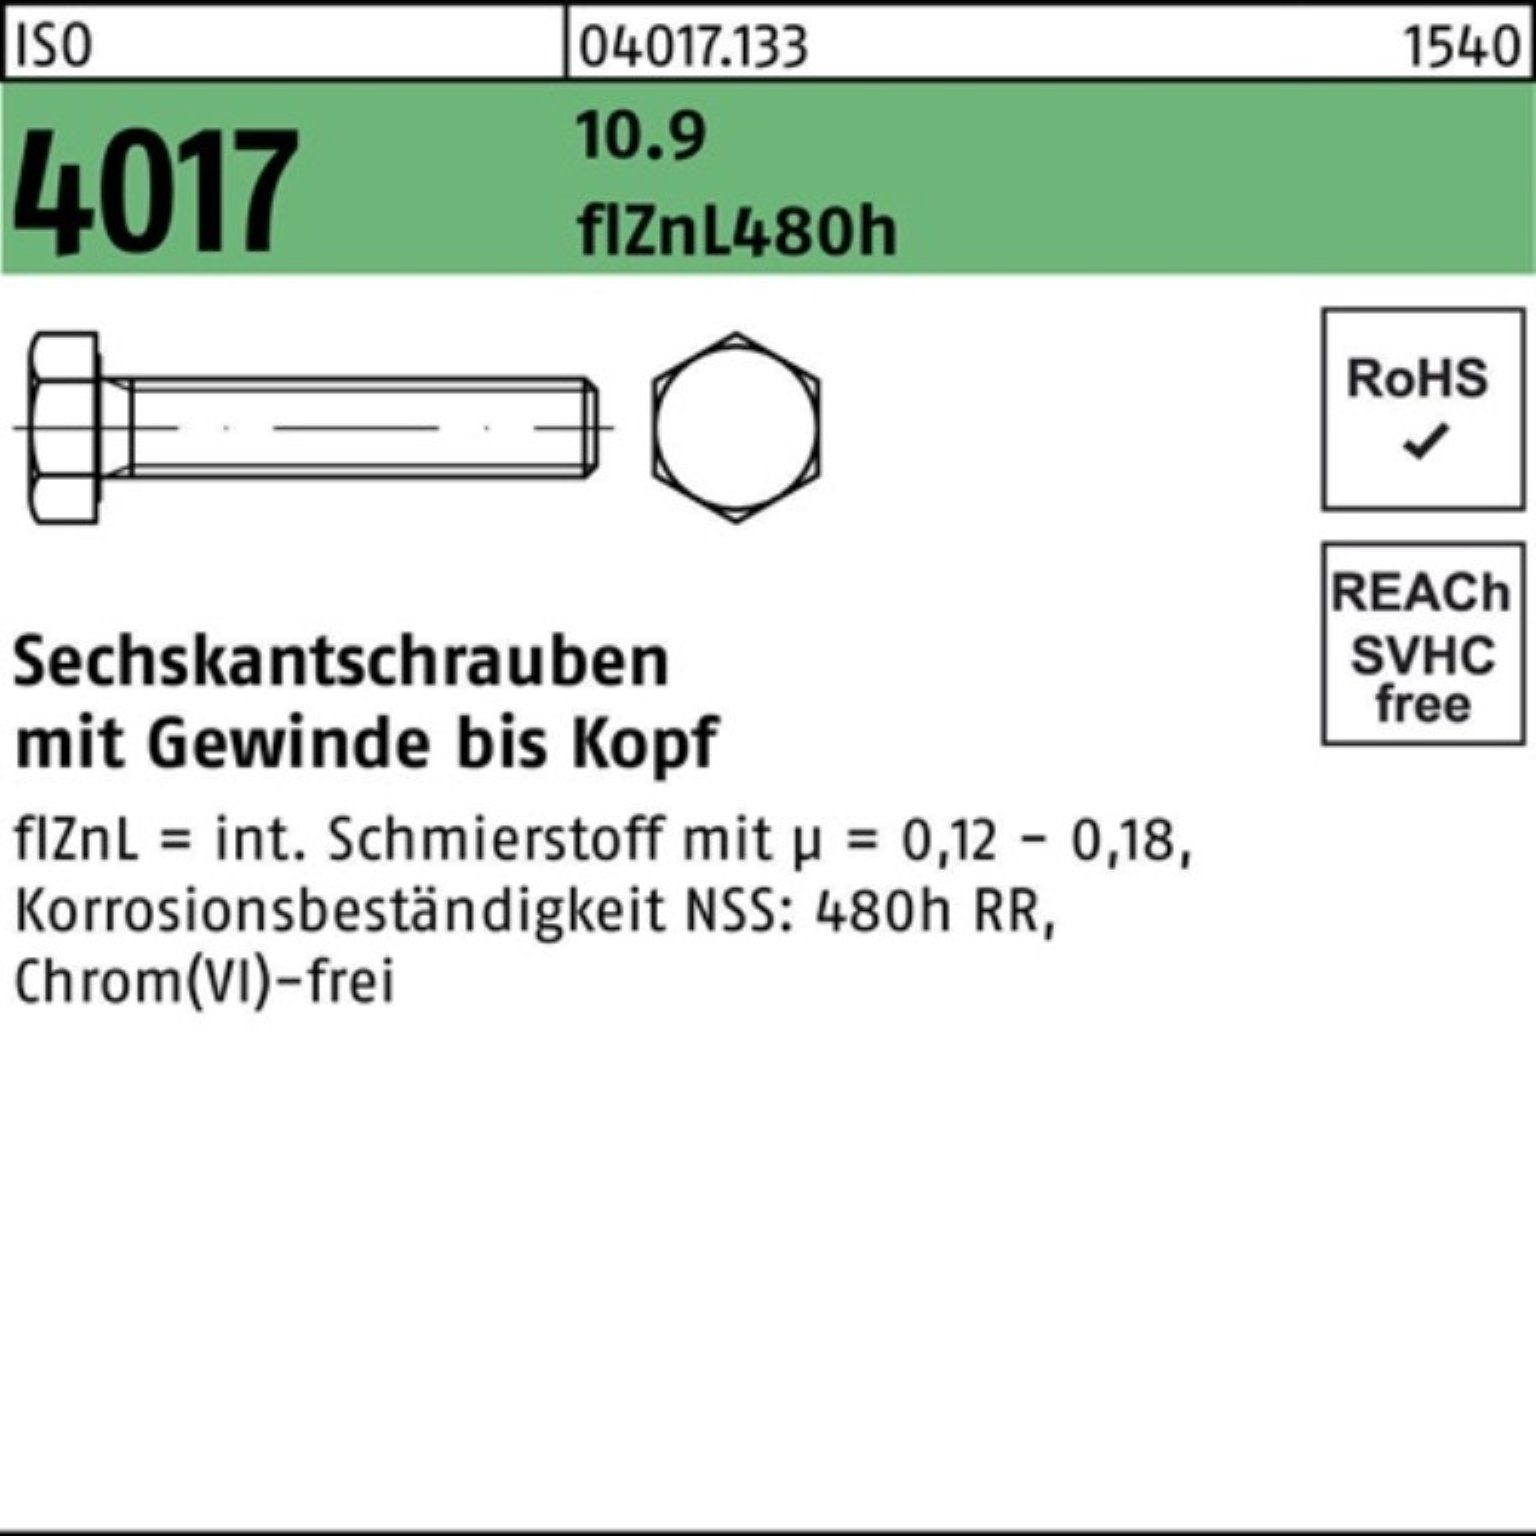 Sechskantschraube 35 Sechskantschraube Pack 4017 VG M20x zinklamellenb. 10.9 2 Bufab 100er ISO